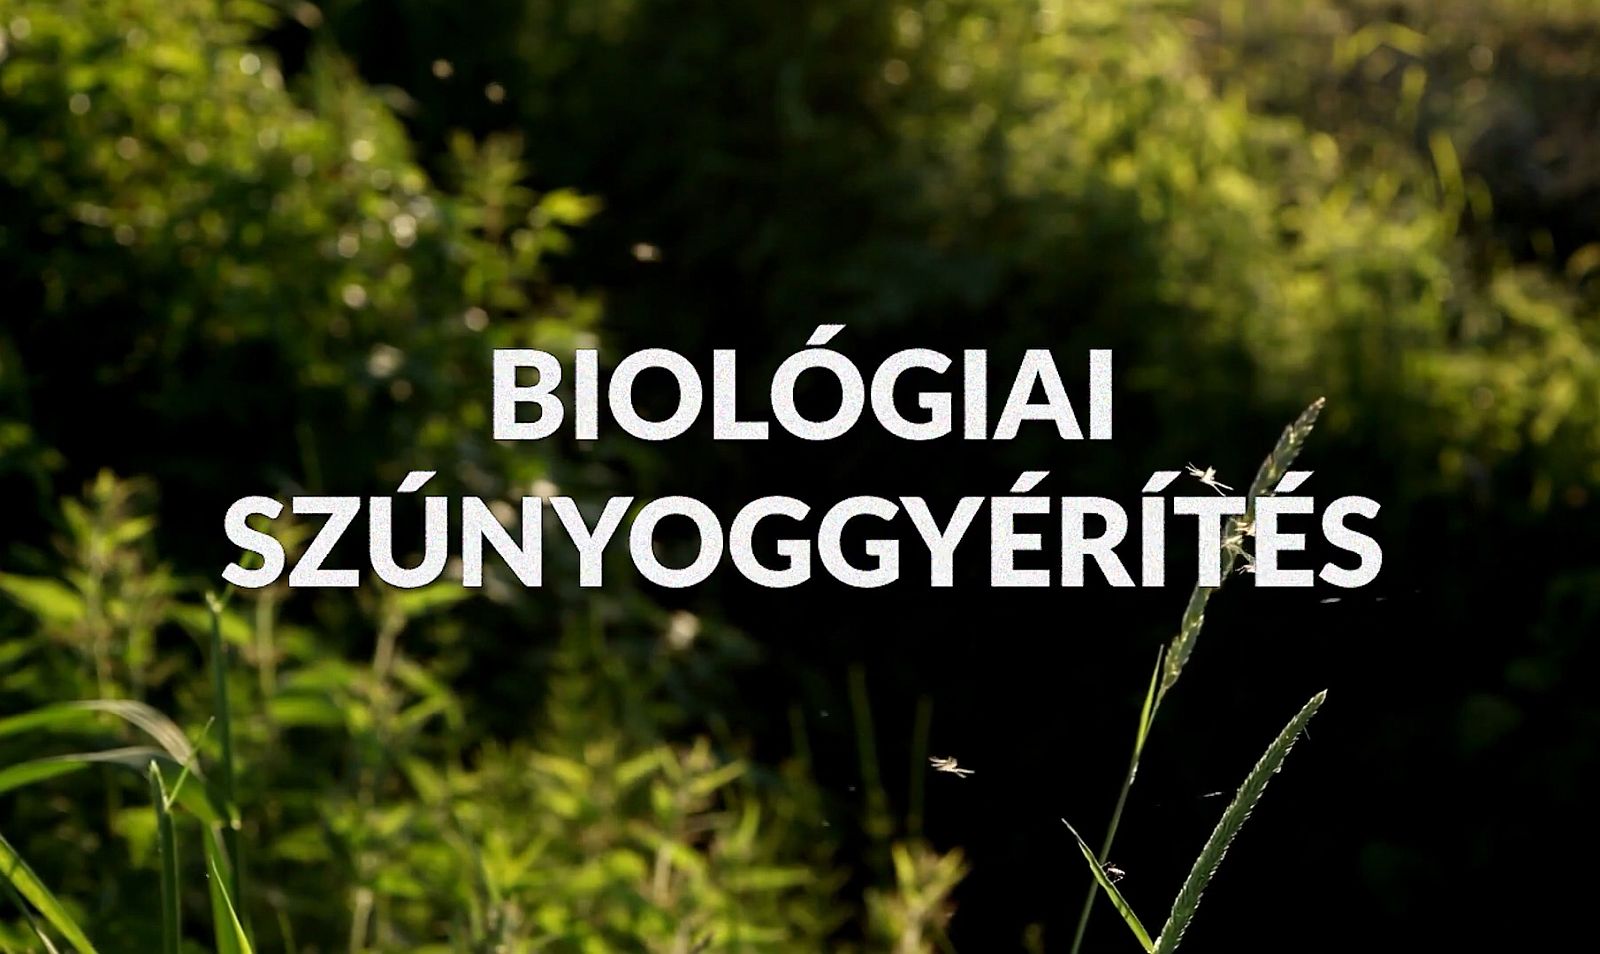 Komplex szúnyoggyérítés a fehérváriak bevonásával, az ökoszisztéma védelmében